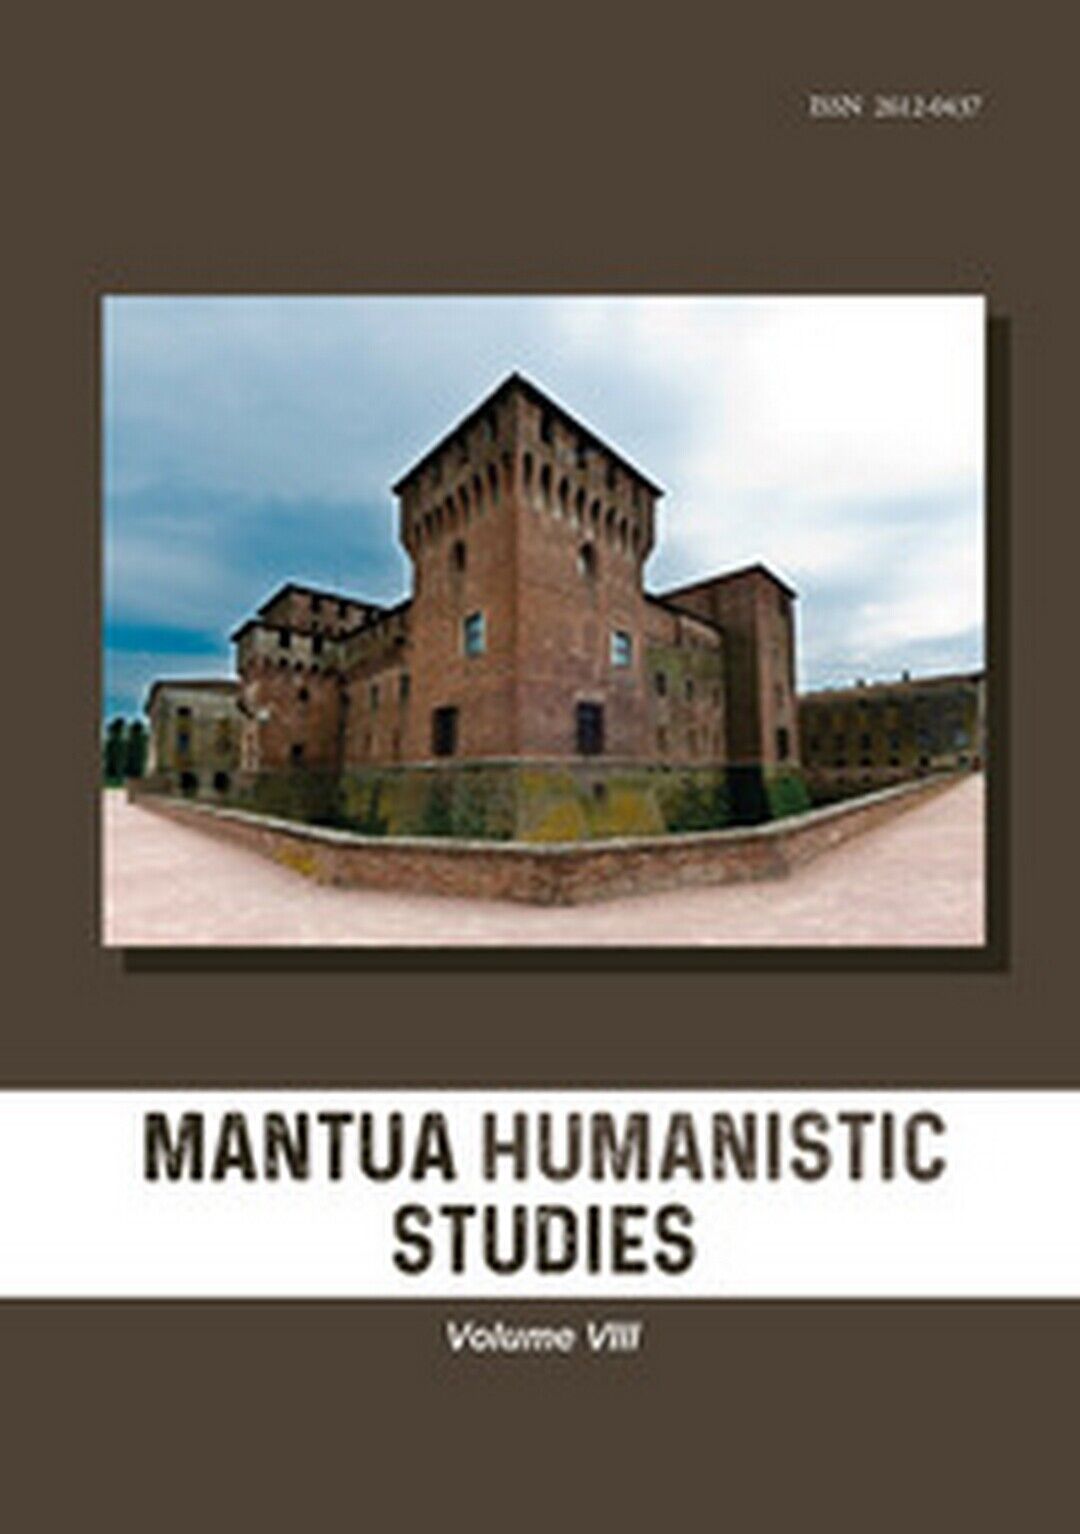 Mantua humanistic studies Vol.8  di G. Pasta,  2019,  Universitas Studiorum